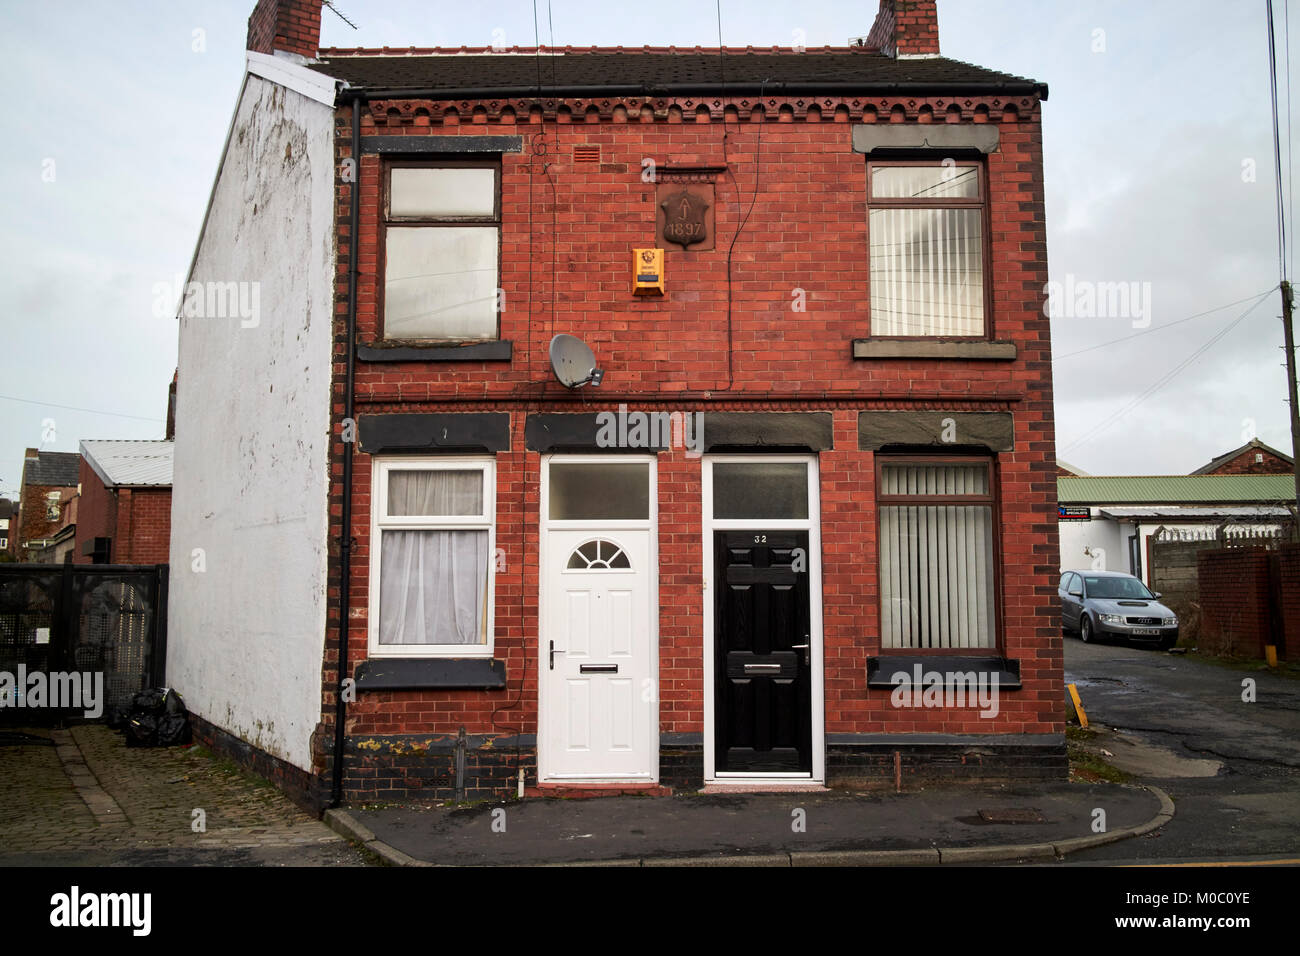 Dos dormitorios en casas adosadas victorianas de ladrillo rojo ward street St Helens merseyside uk Foto de stock